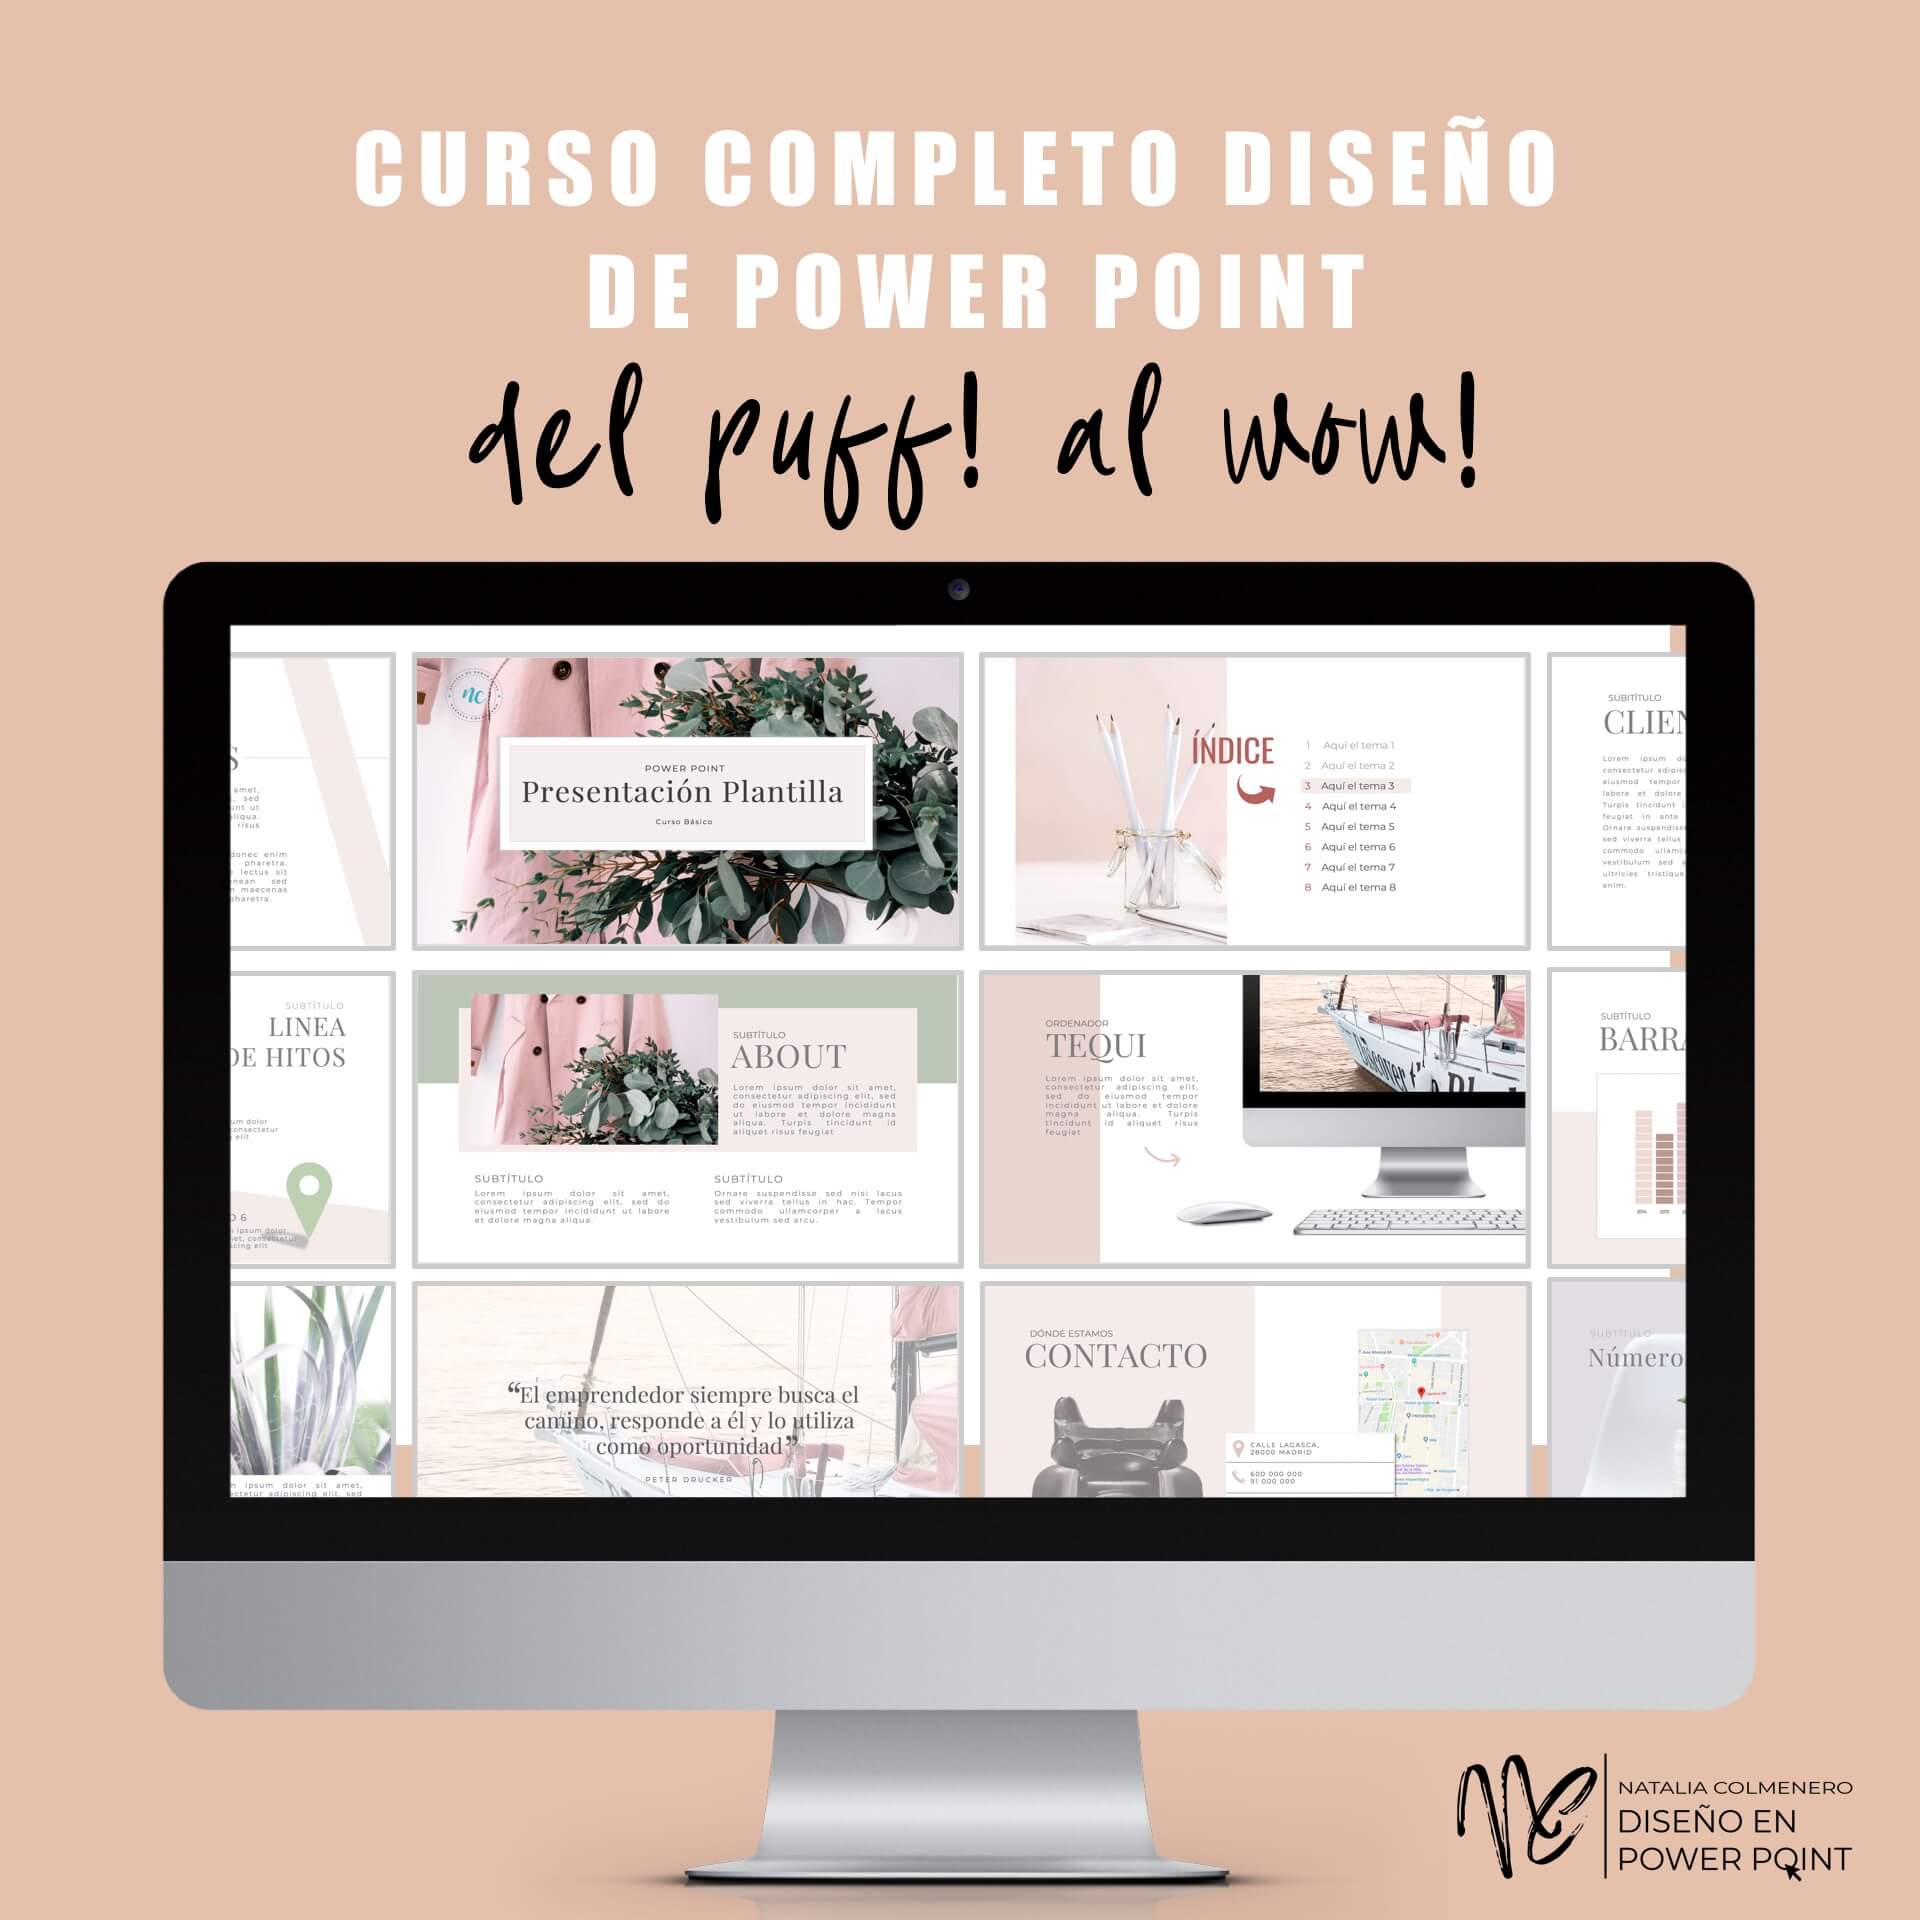 Disenos De Power Point Curso Online Diseño de PowerPoint by Natalia Colmenero